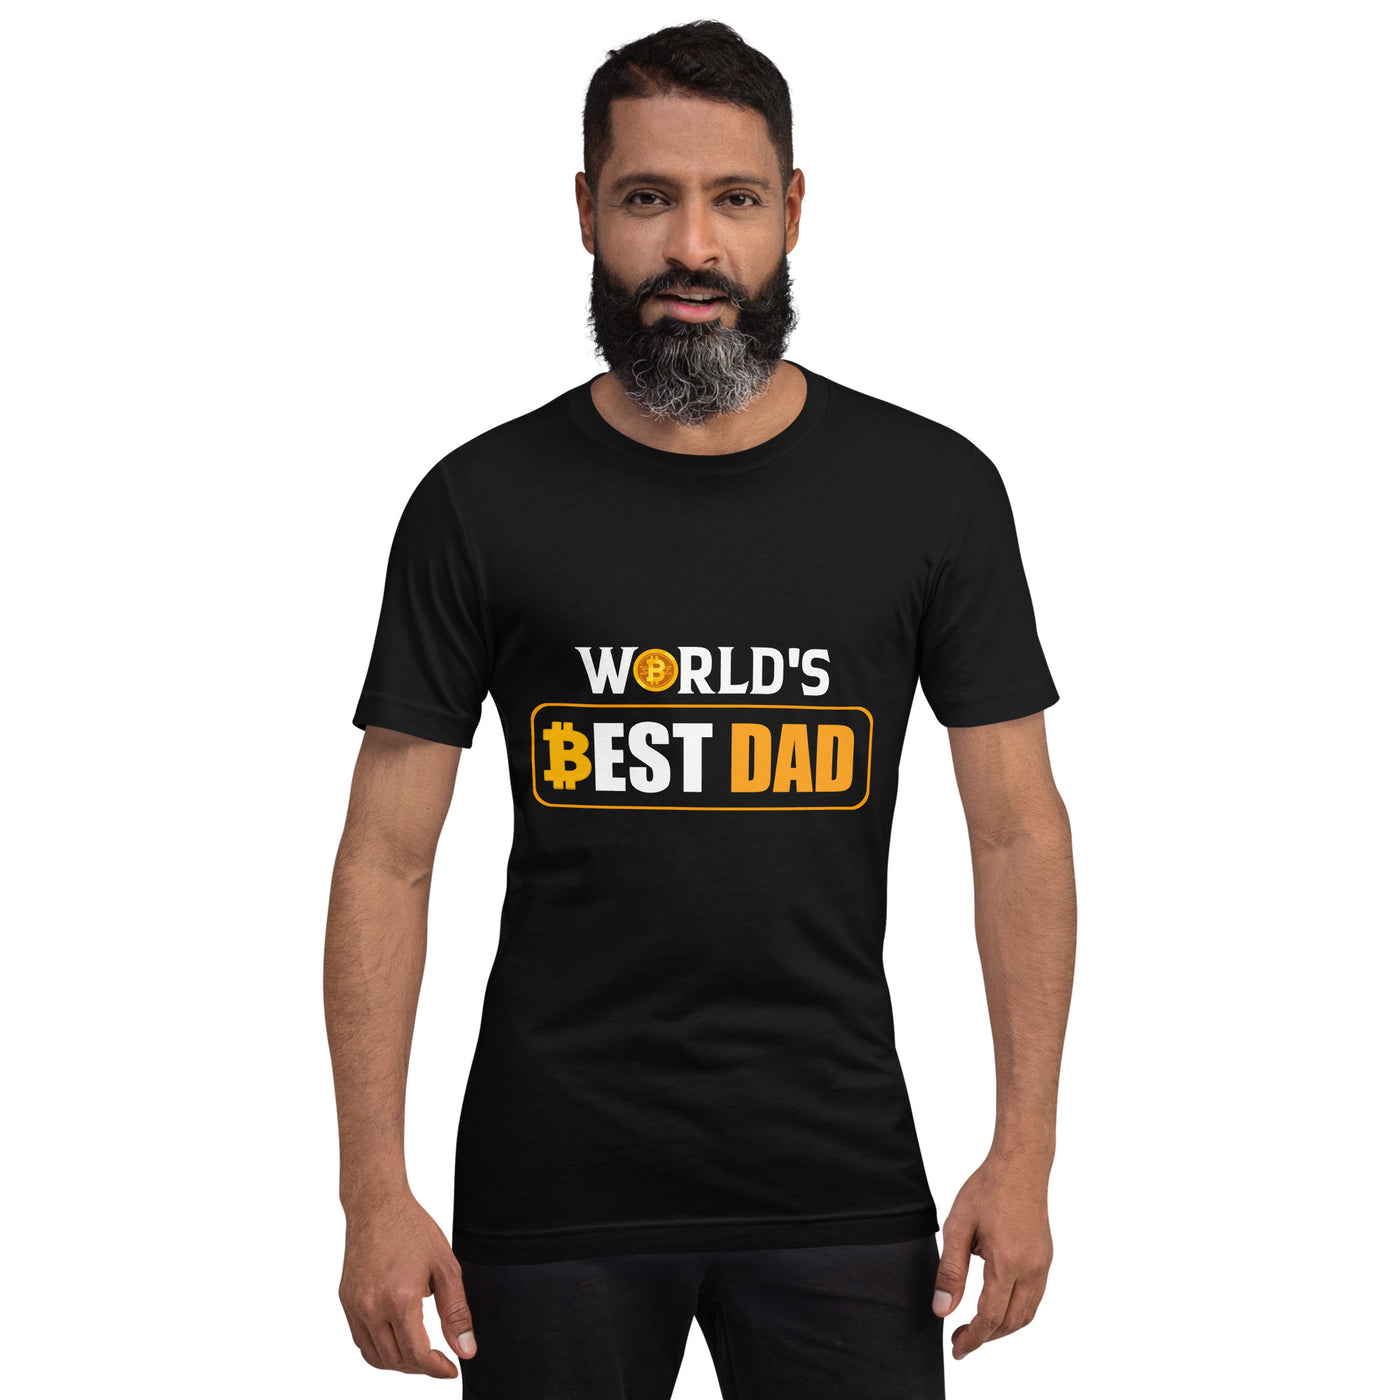 World's Best Dad - Unisex t-shirt